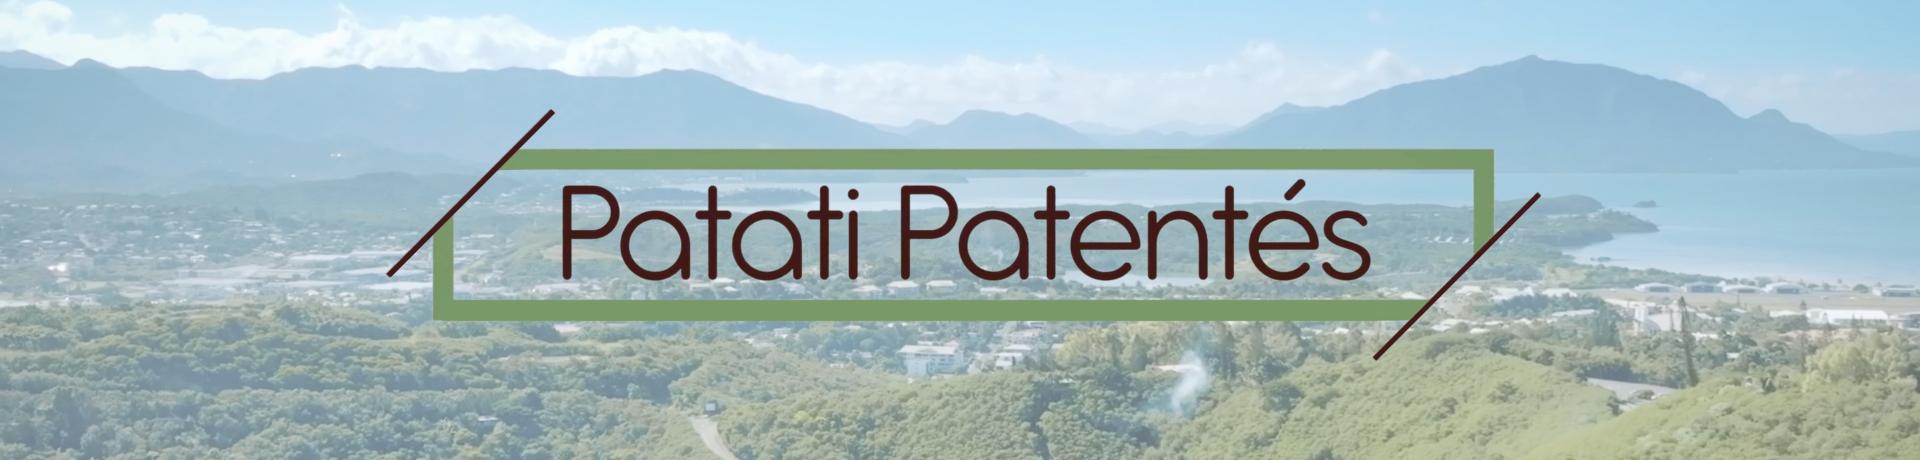 Patati Patentés